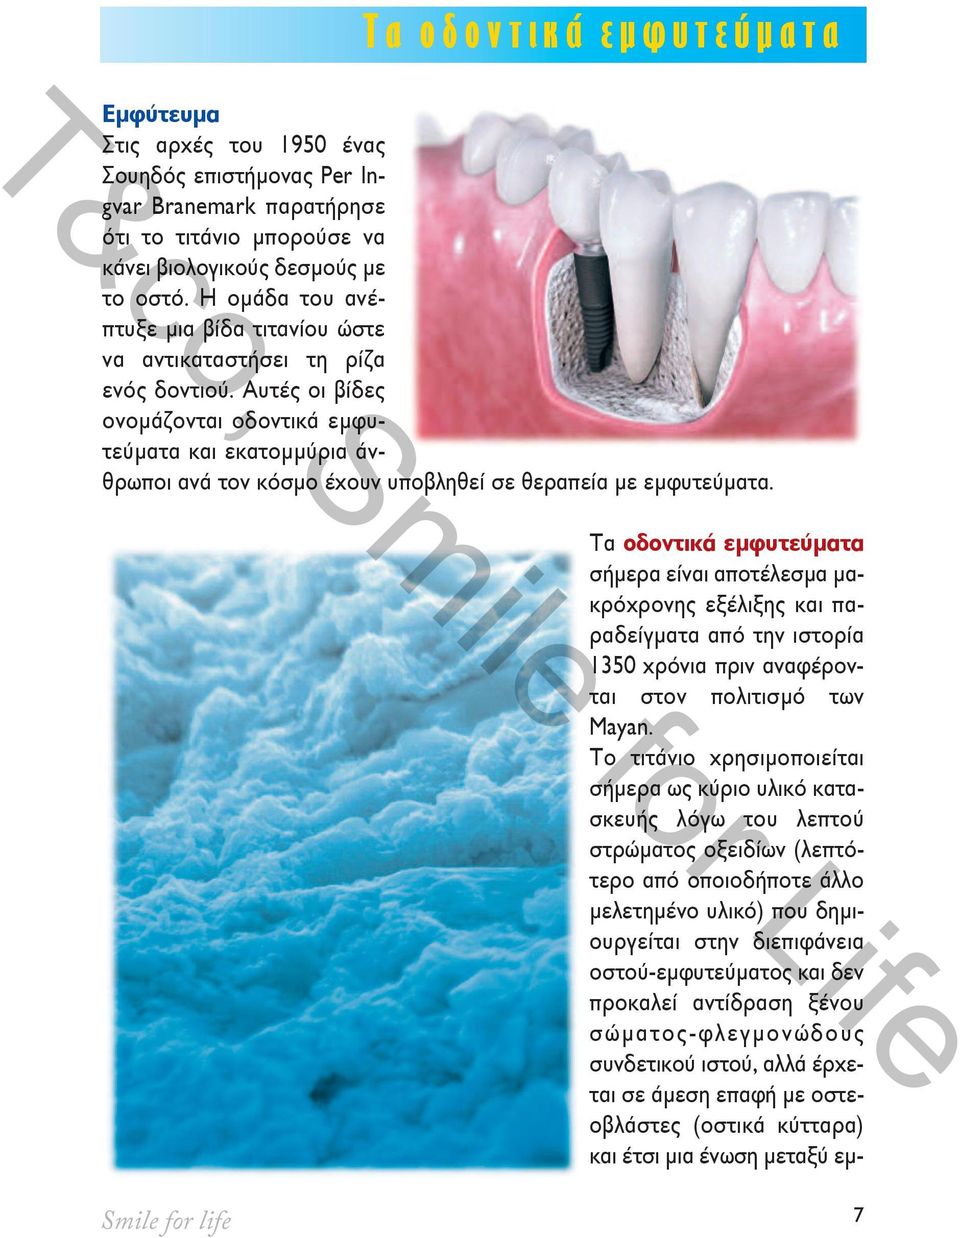 Αυτές οι βίδες ονομάζονται οδοντικά εμφυτεύματα και εκατομμύρια άνθρωποι ανά τον κόσμο έχουν υποβληθεί σε θεραπεία με εμφυτεύματα.